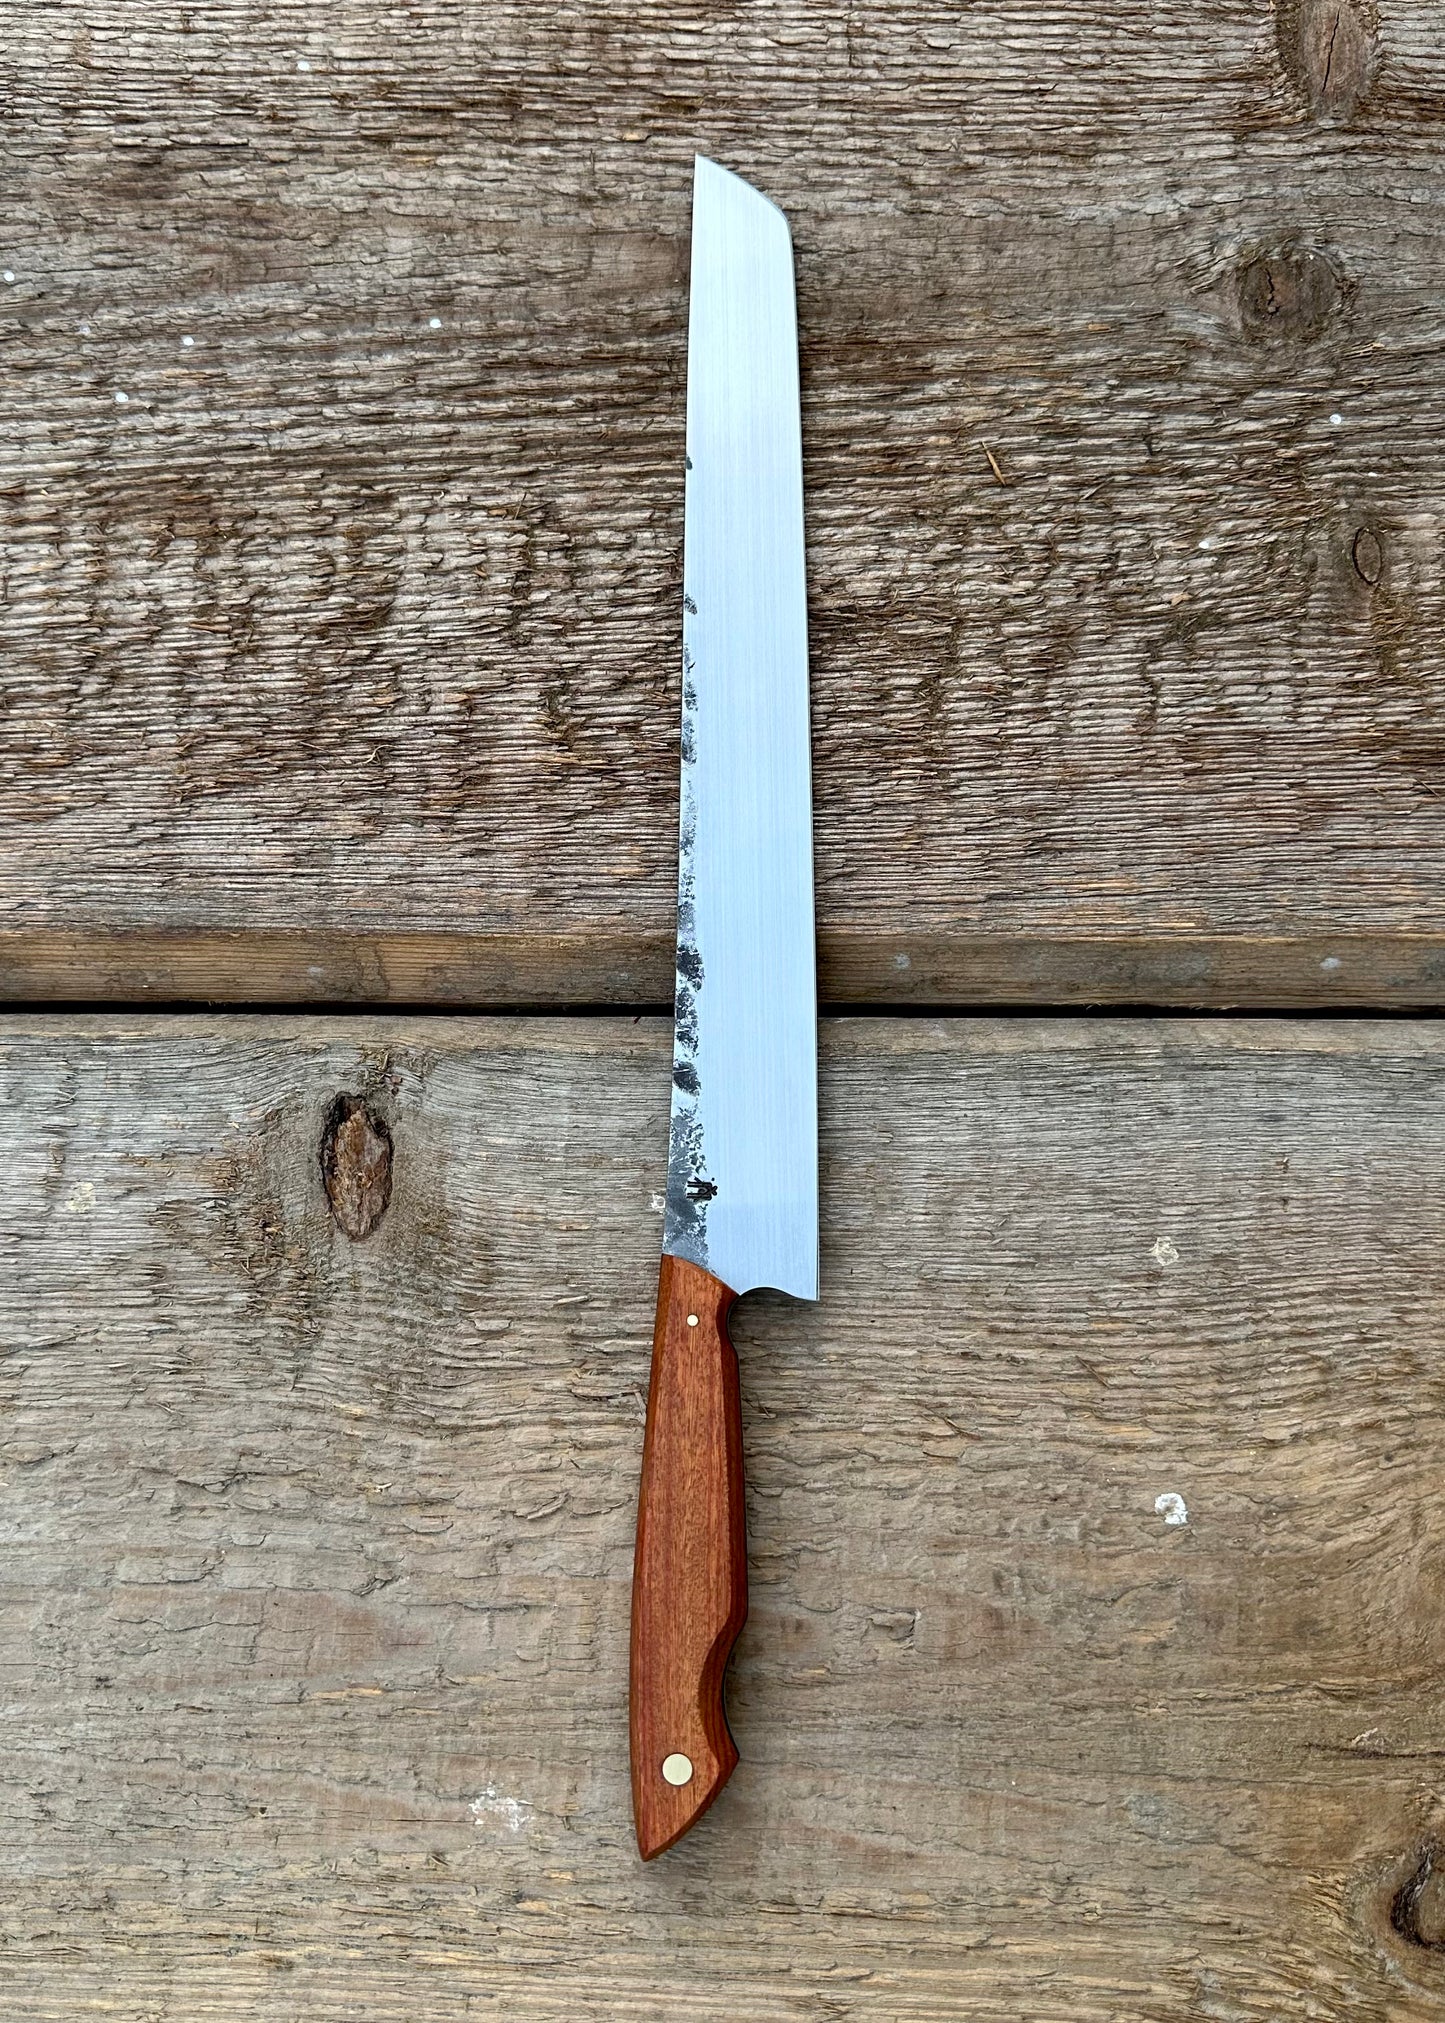 BBQ Knife & Fork Set